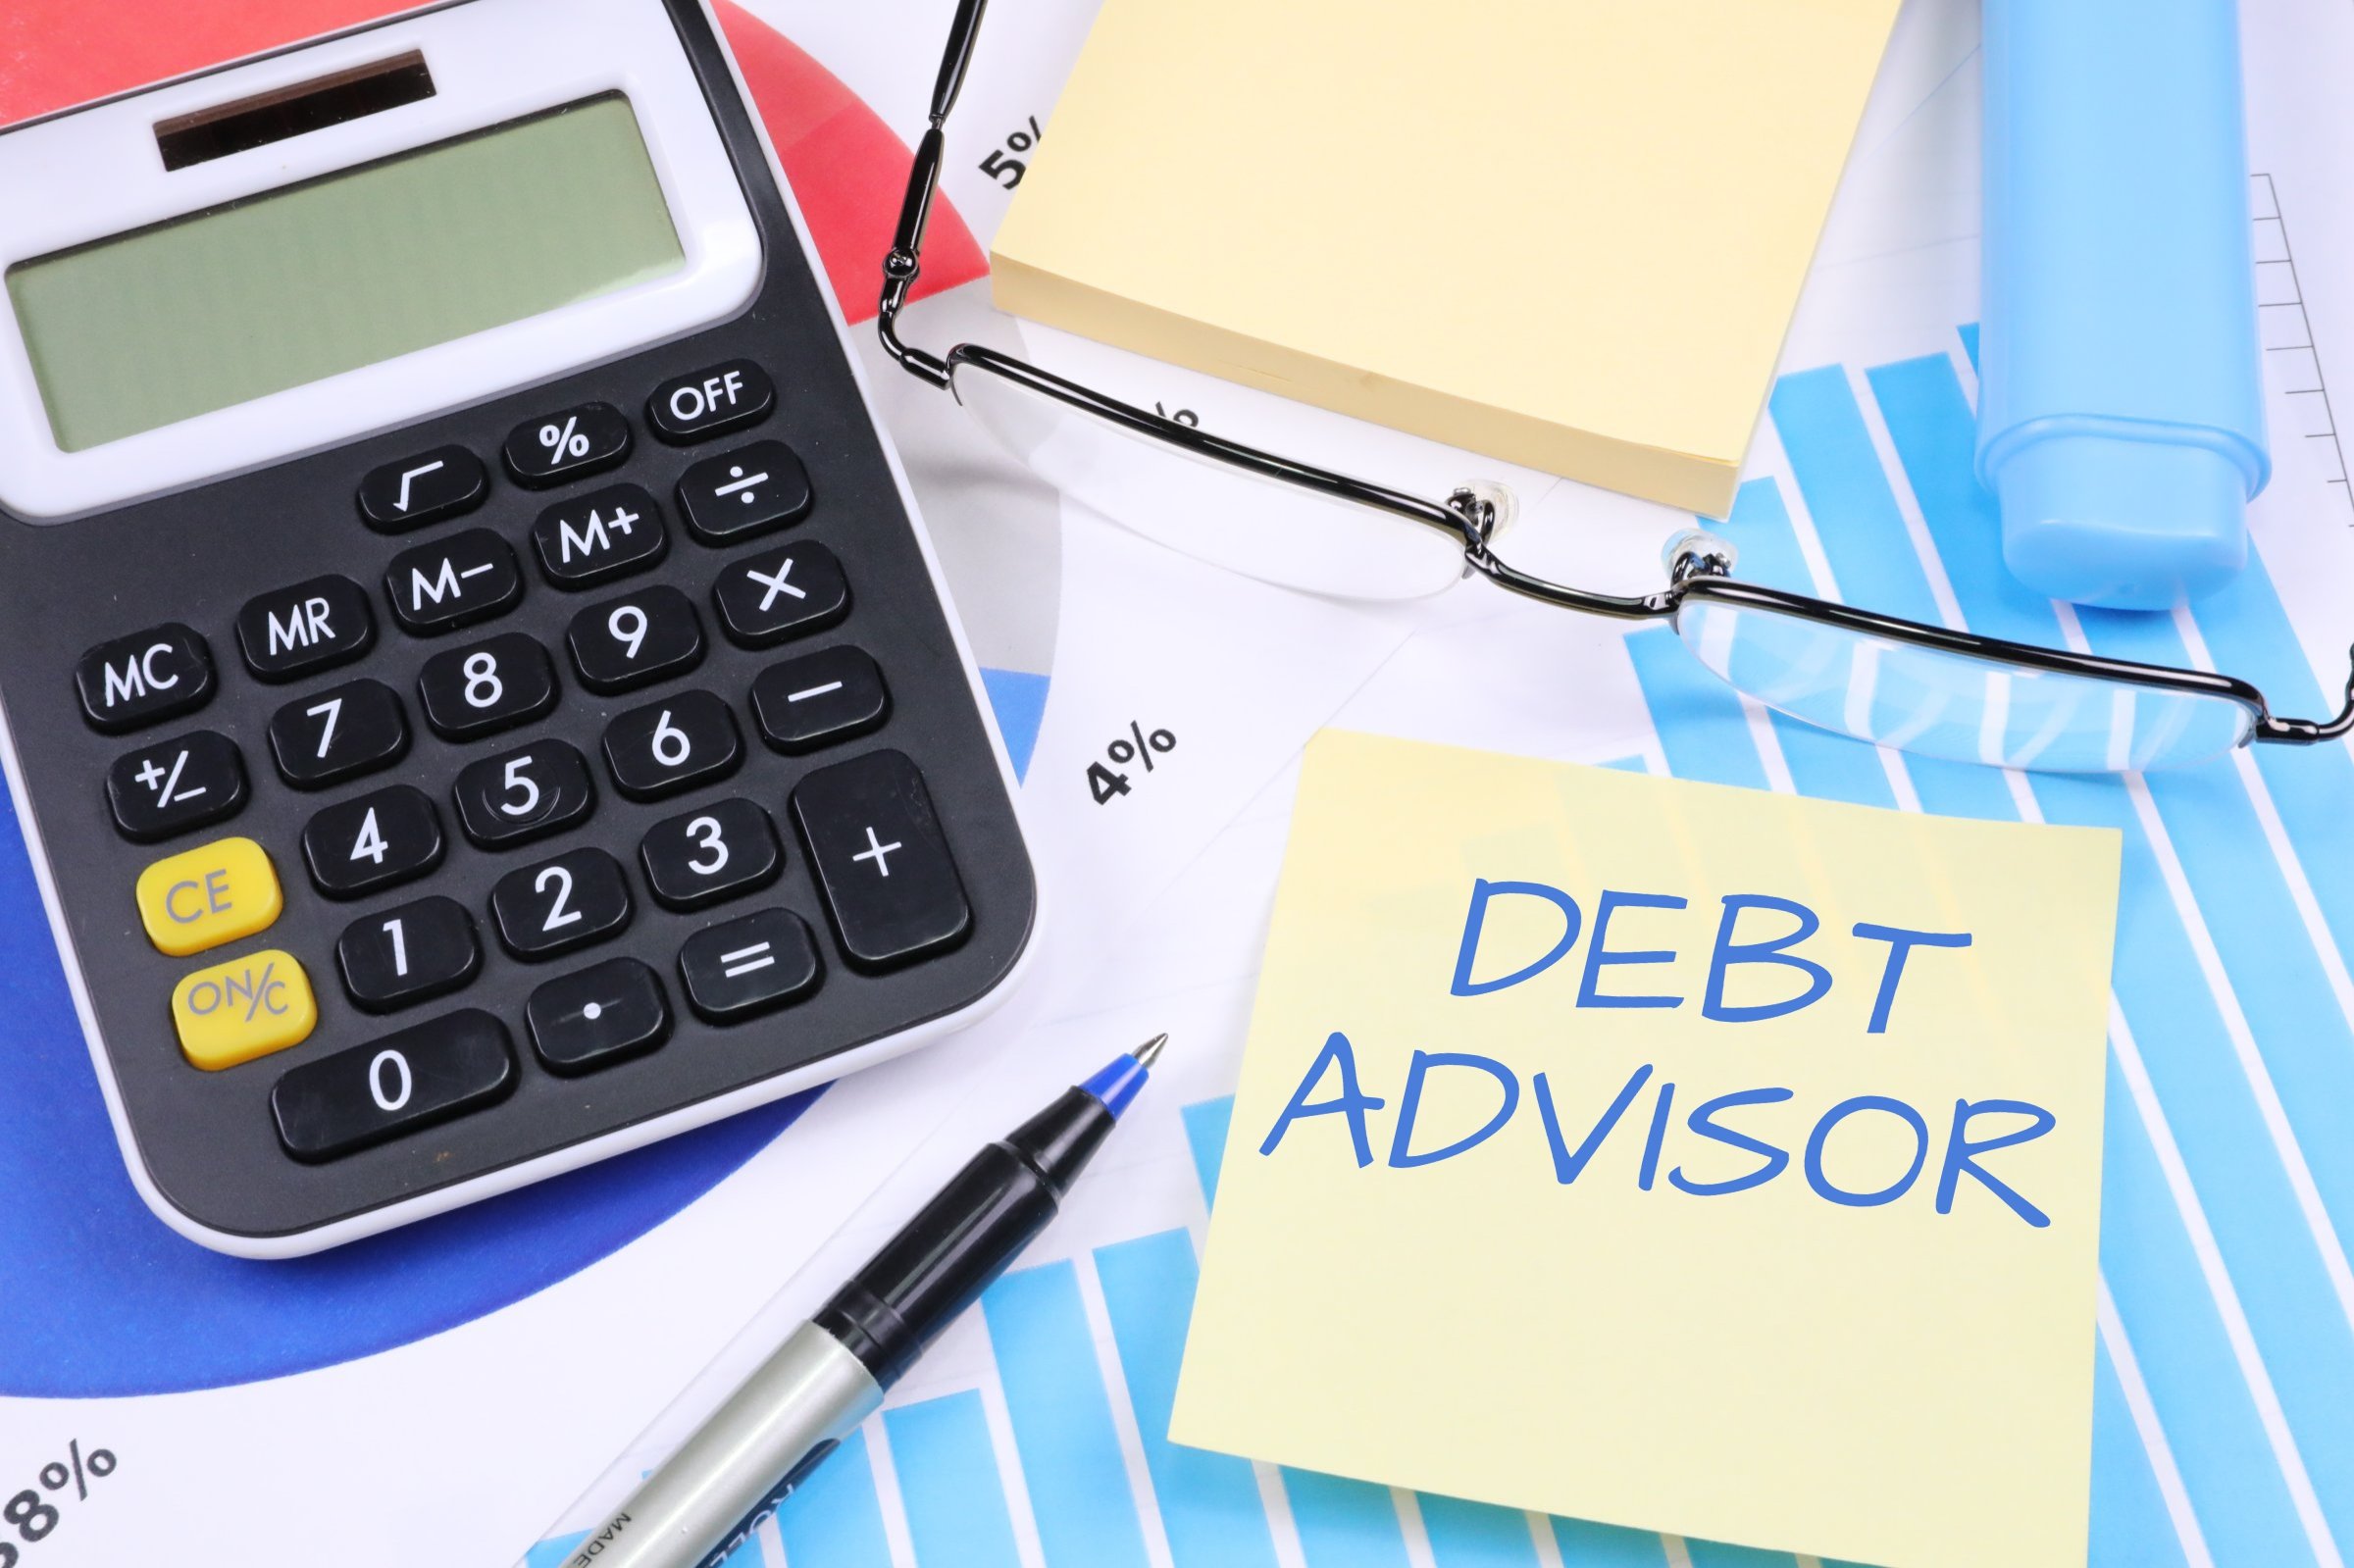 Debt Advisor